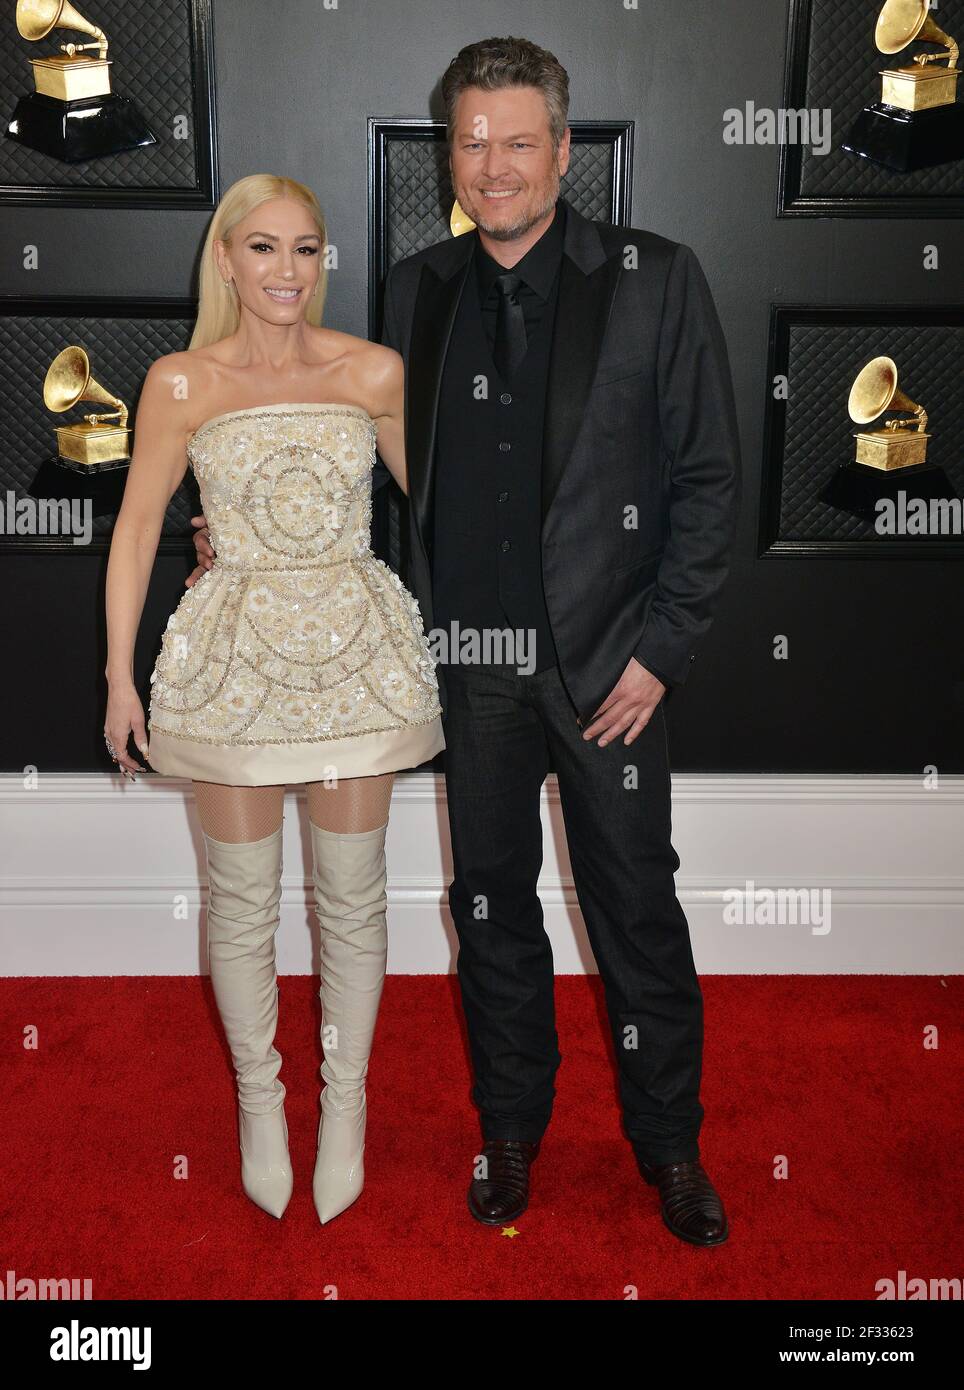 Gwen Stefani, Blake Shelton 219, participe au 62e GRAMMY Awards annuel au Staples Center le 26 janvier 2020 à Los Angeles, en Californie Banque D'Images